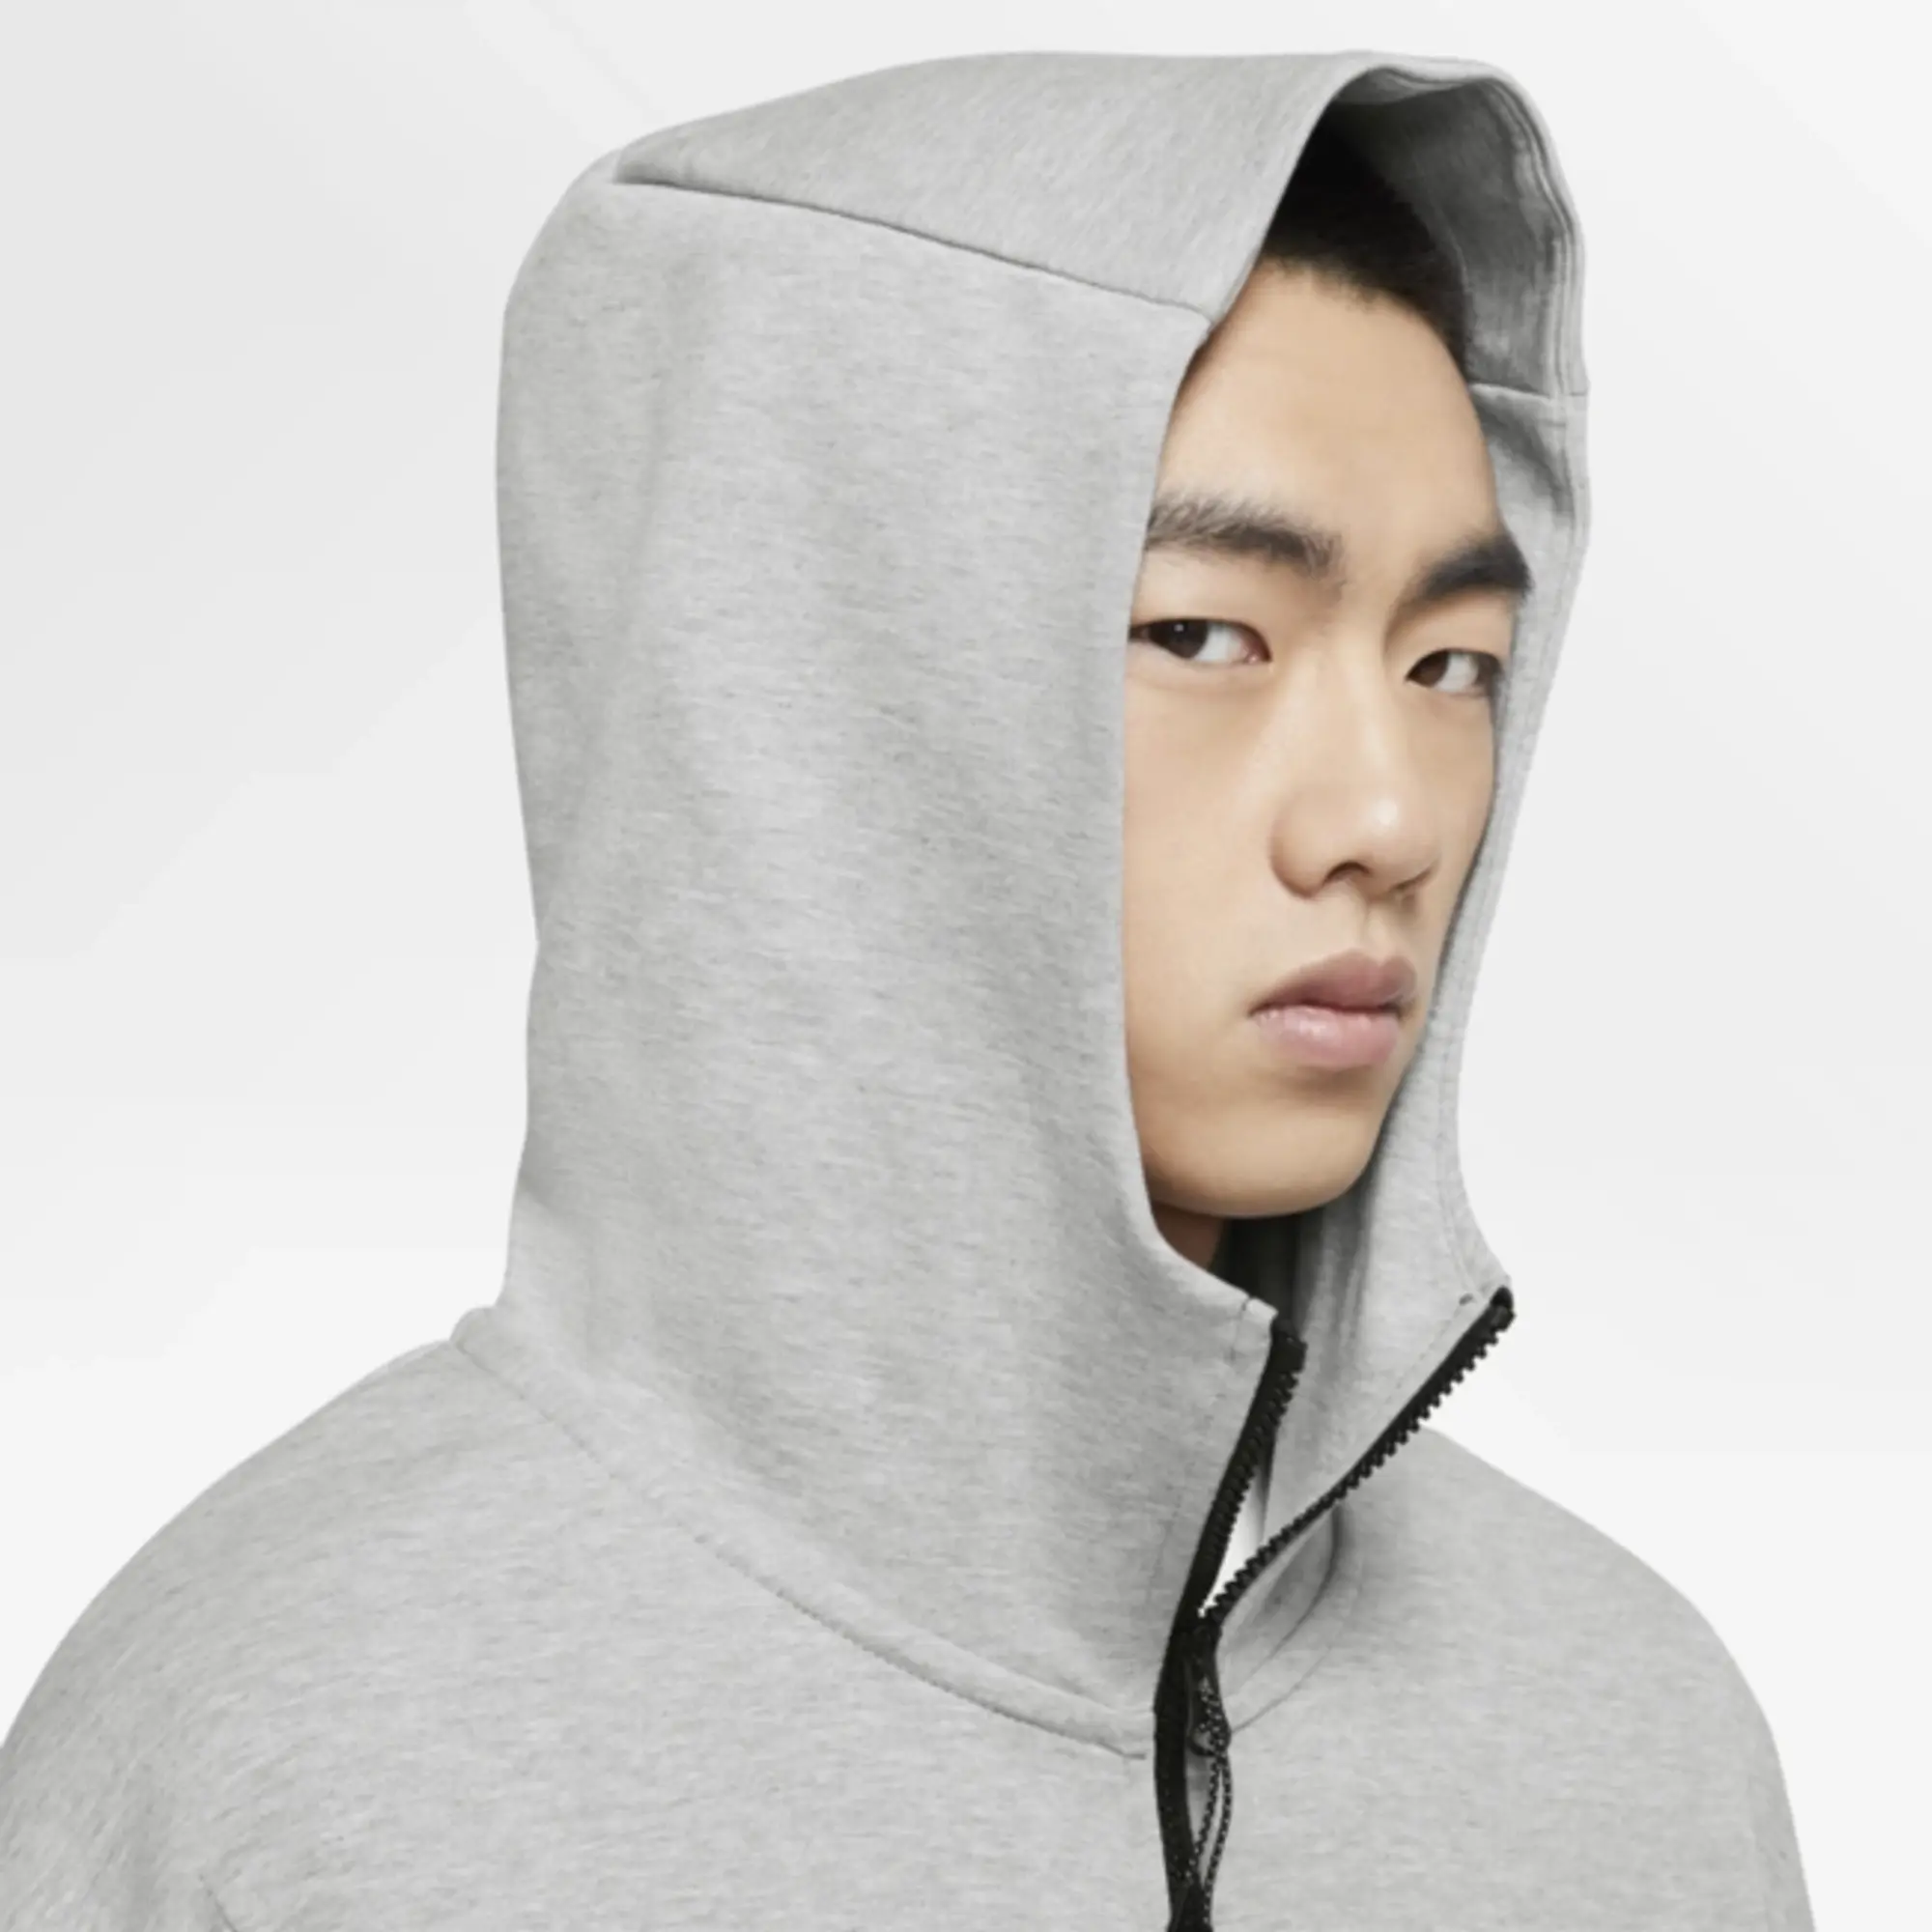 Nike Hoodie Nsw Tech Fleece - Grey